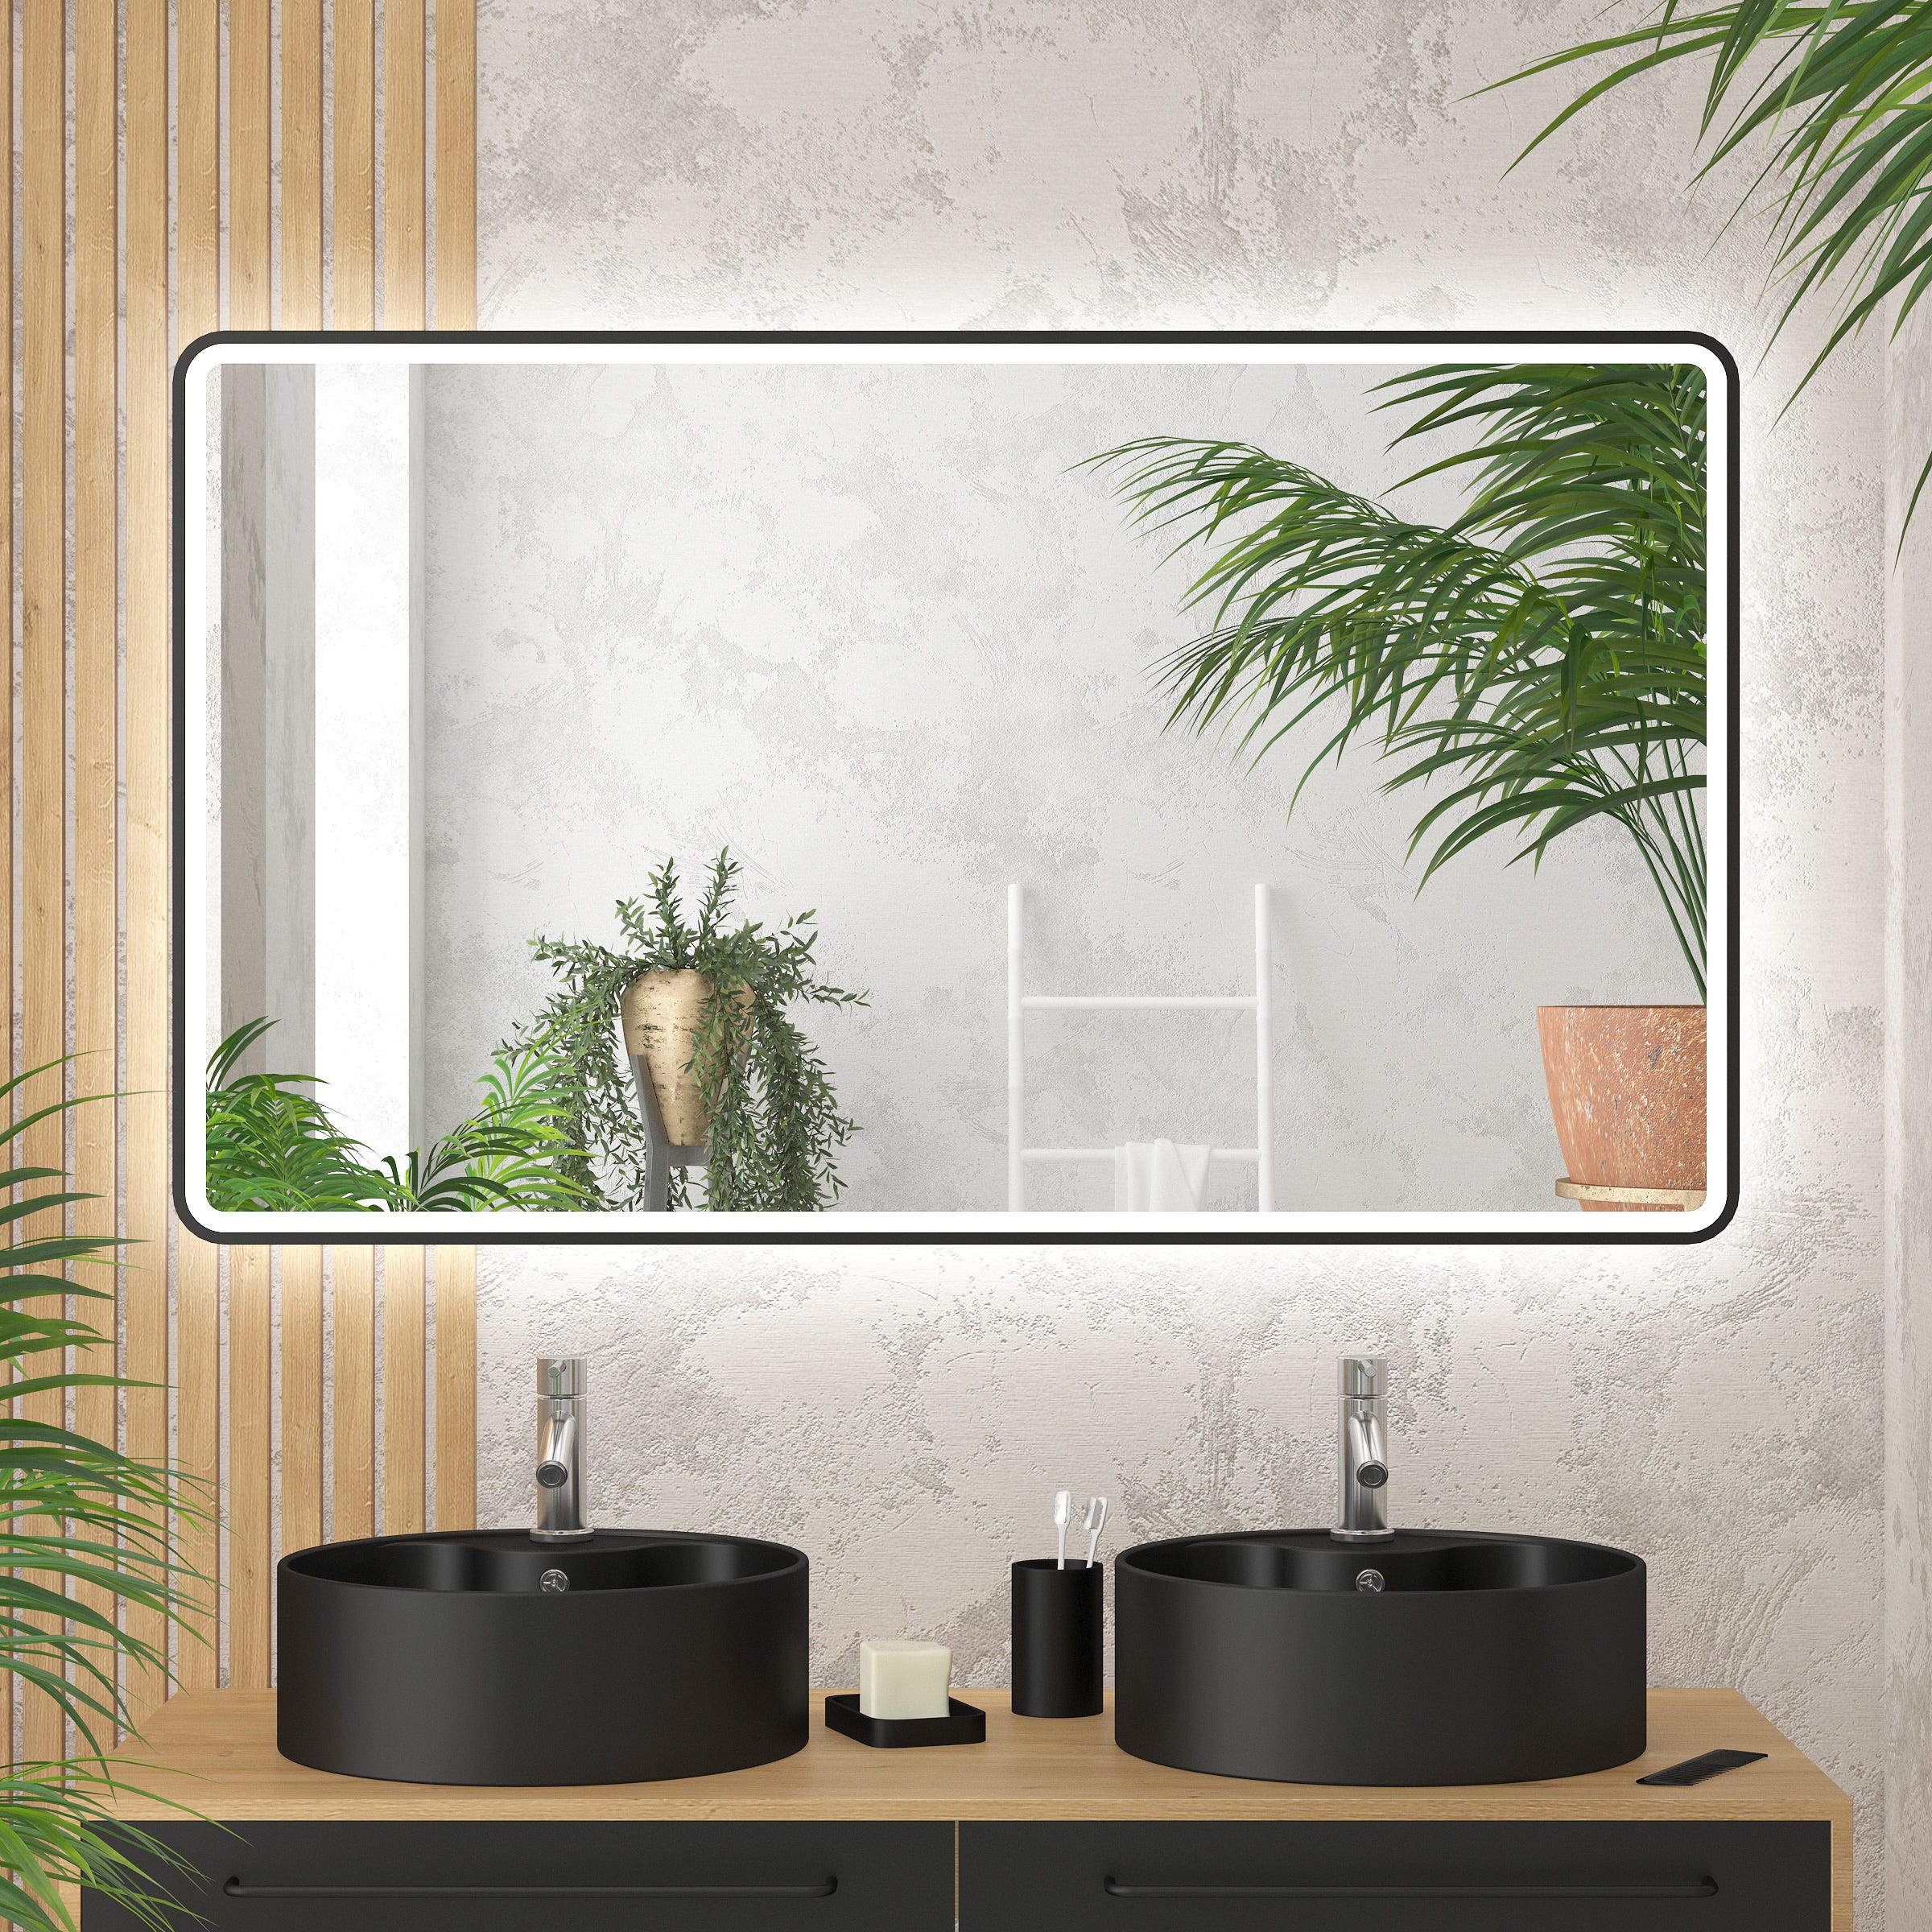 Miroir lumineux LED armoire murale salle de bain 2 en 1